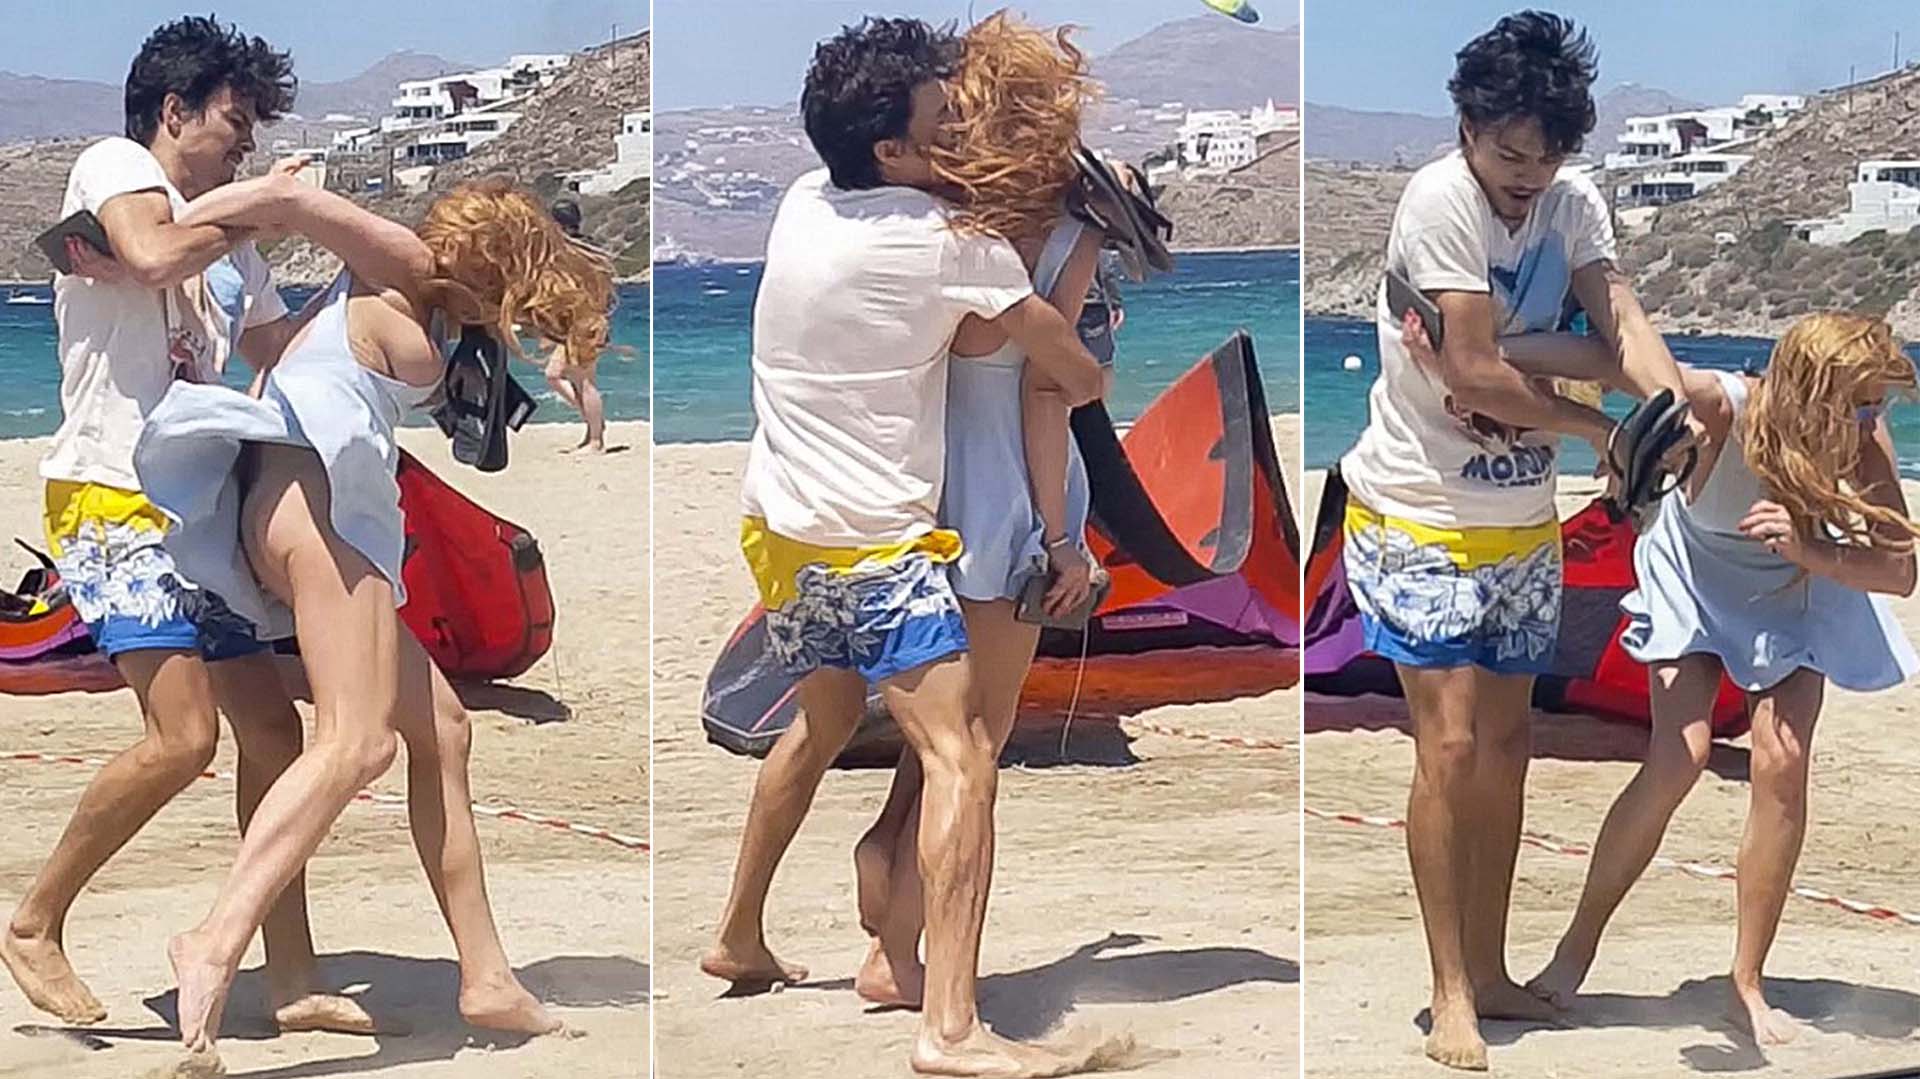 Un video publicado por el sitio Radar Online registró el preciso momento en el que el multimillonario ruso Egor Tarabasov se muestra violento con Lindsay Lohan tras una discusión en una playa de Mykonos, Grecia